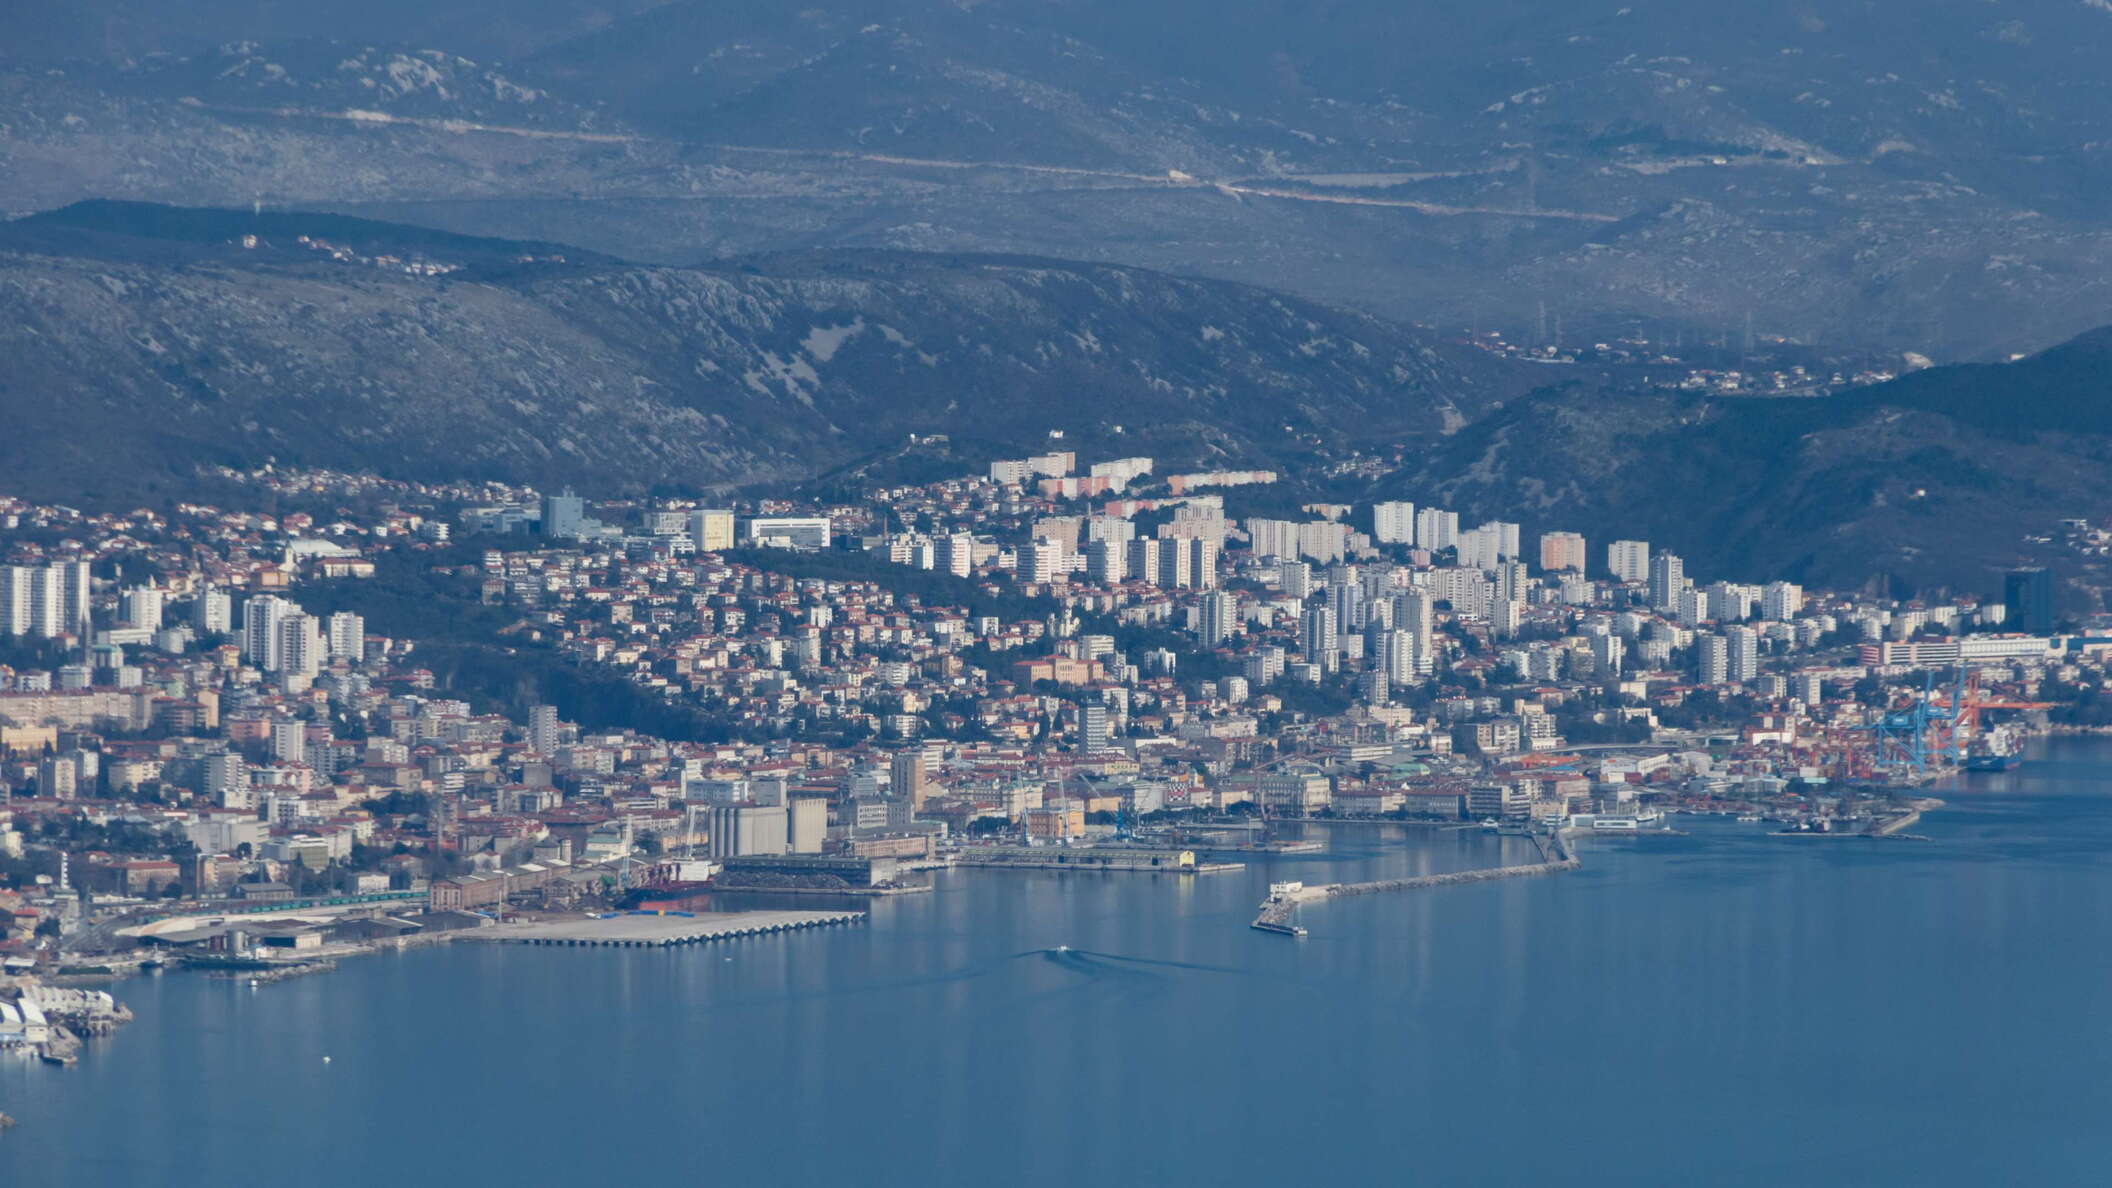 Kvarner Gulf with Rijeka